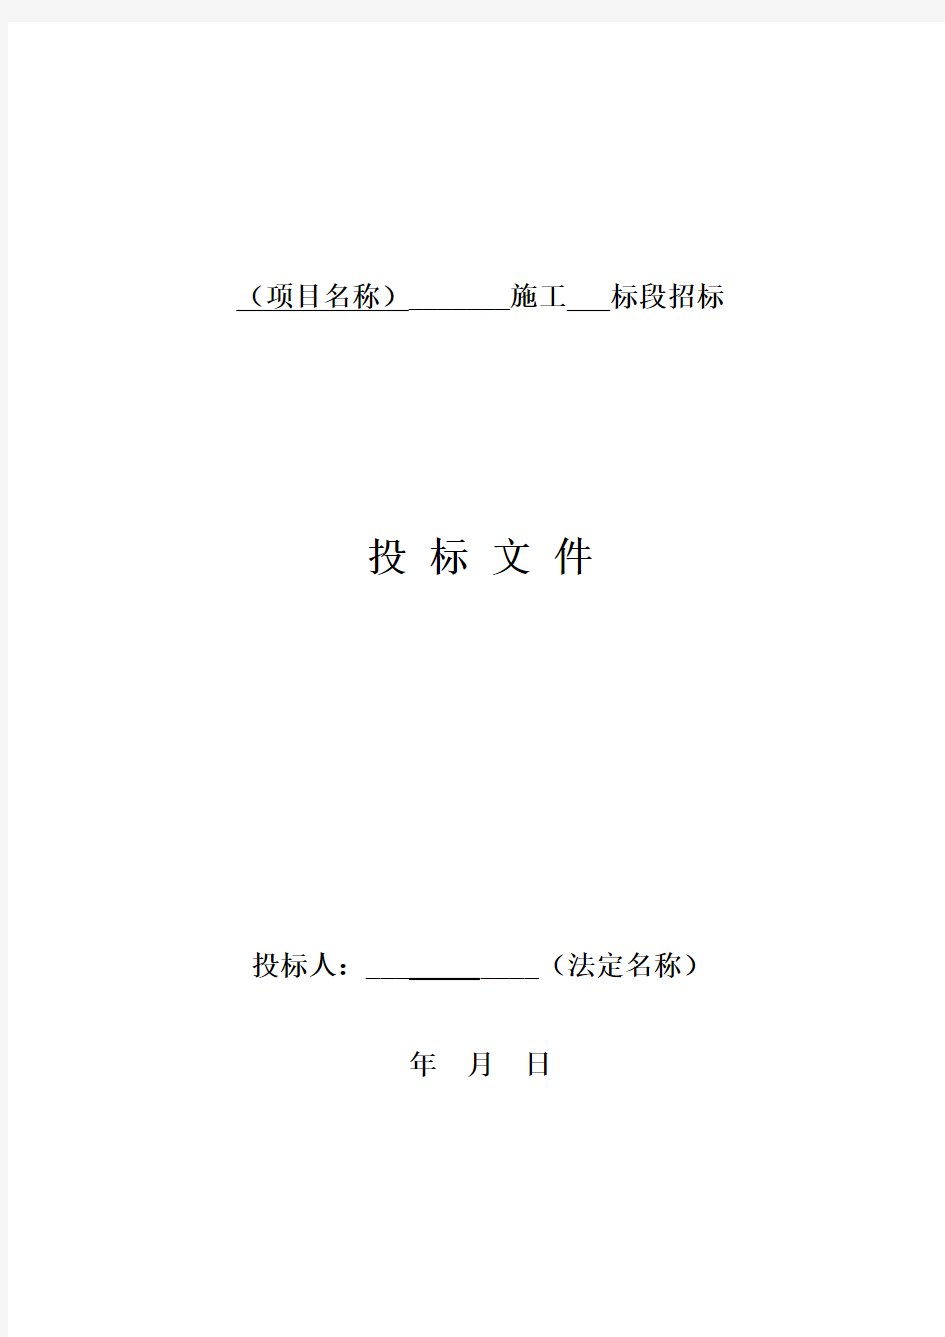 四川省房屋建筑和市政工程标准施工招标文件范本 (2020版)